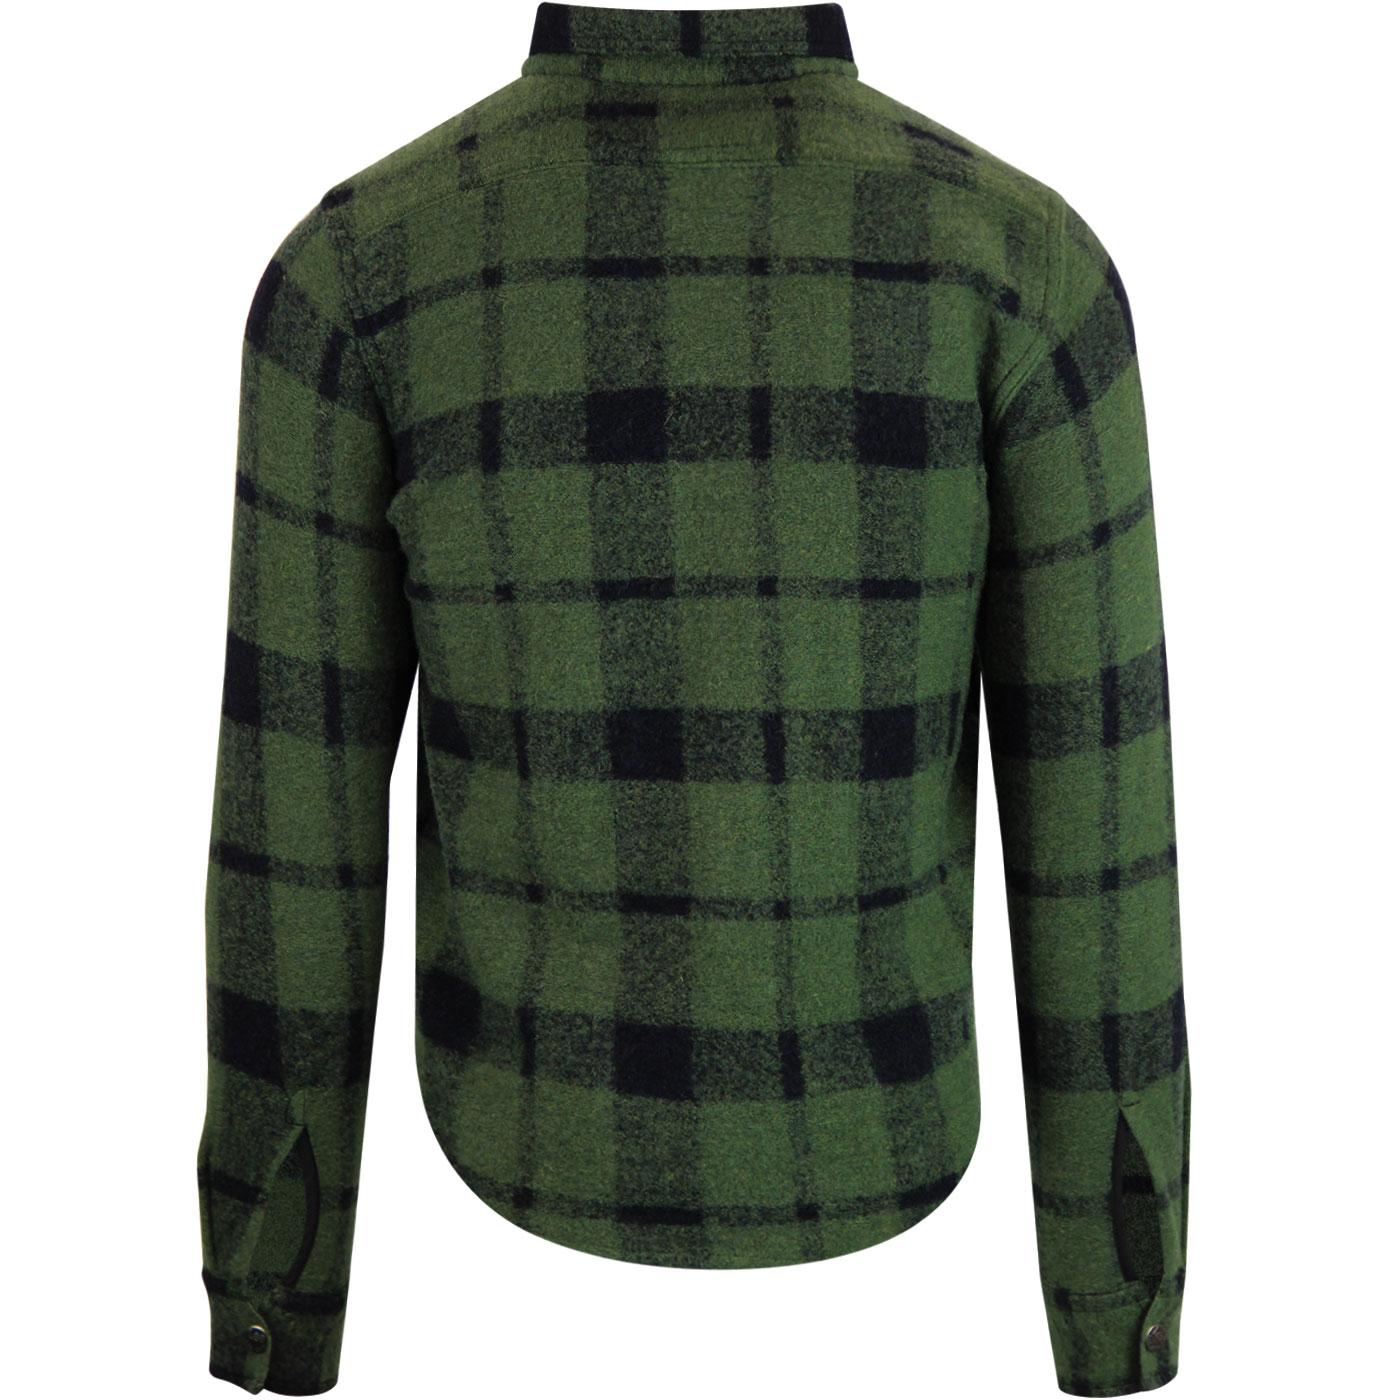 LEE JEANS Men's Retro 50s Wool Zip Overshirt Jacket